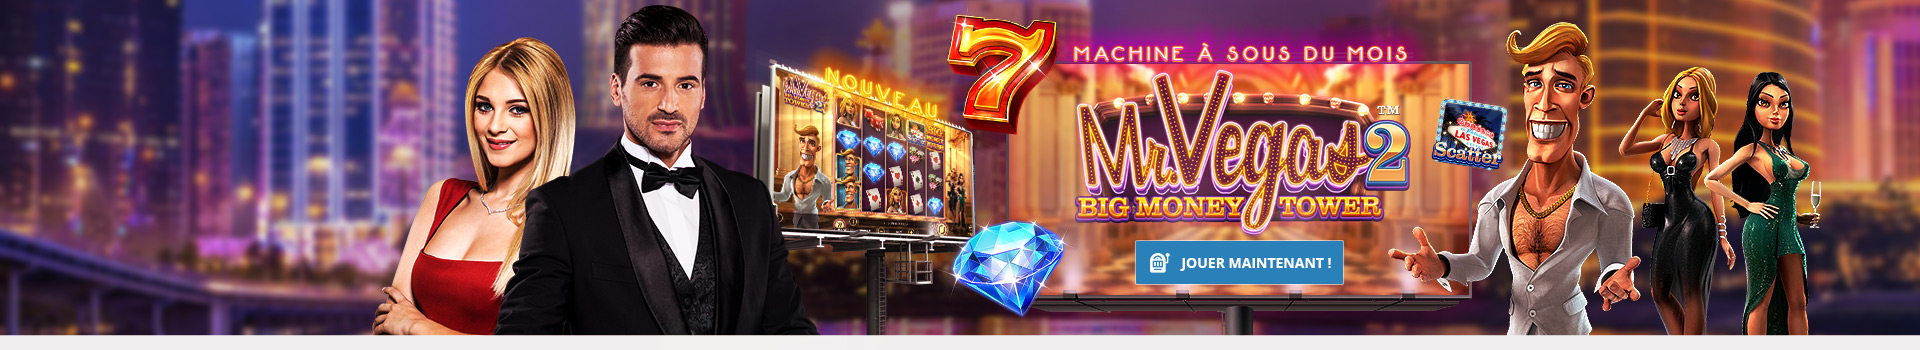 Machine à sous en ligne Mr Vegas 2